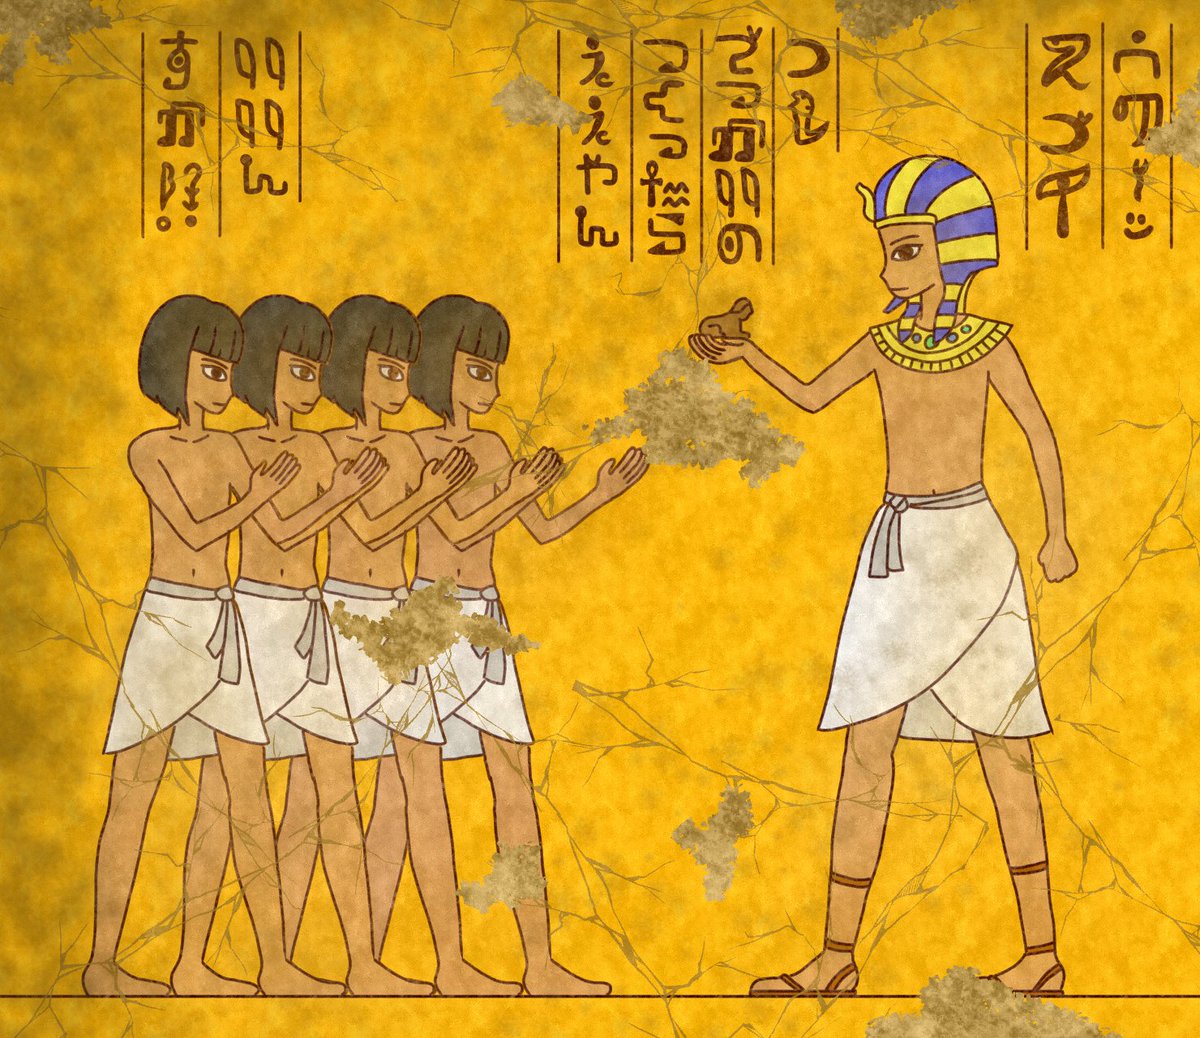 【壁画】スフィンクス
#へんたつ #エジプト壁画風 